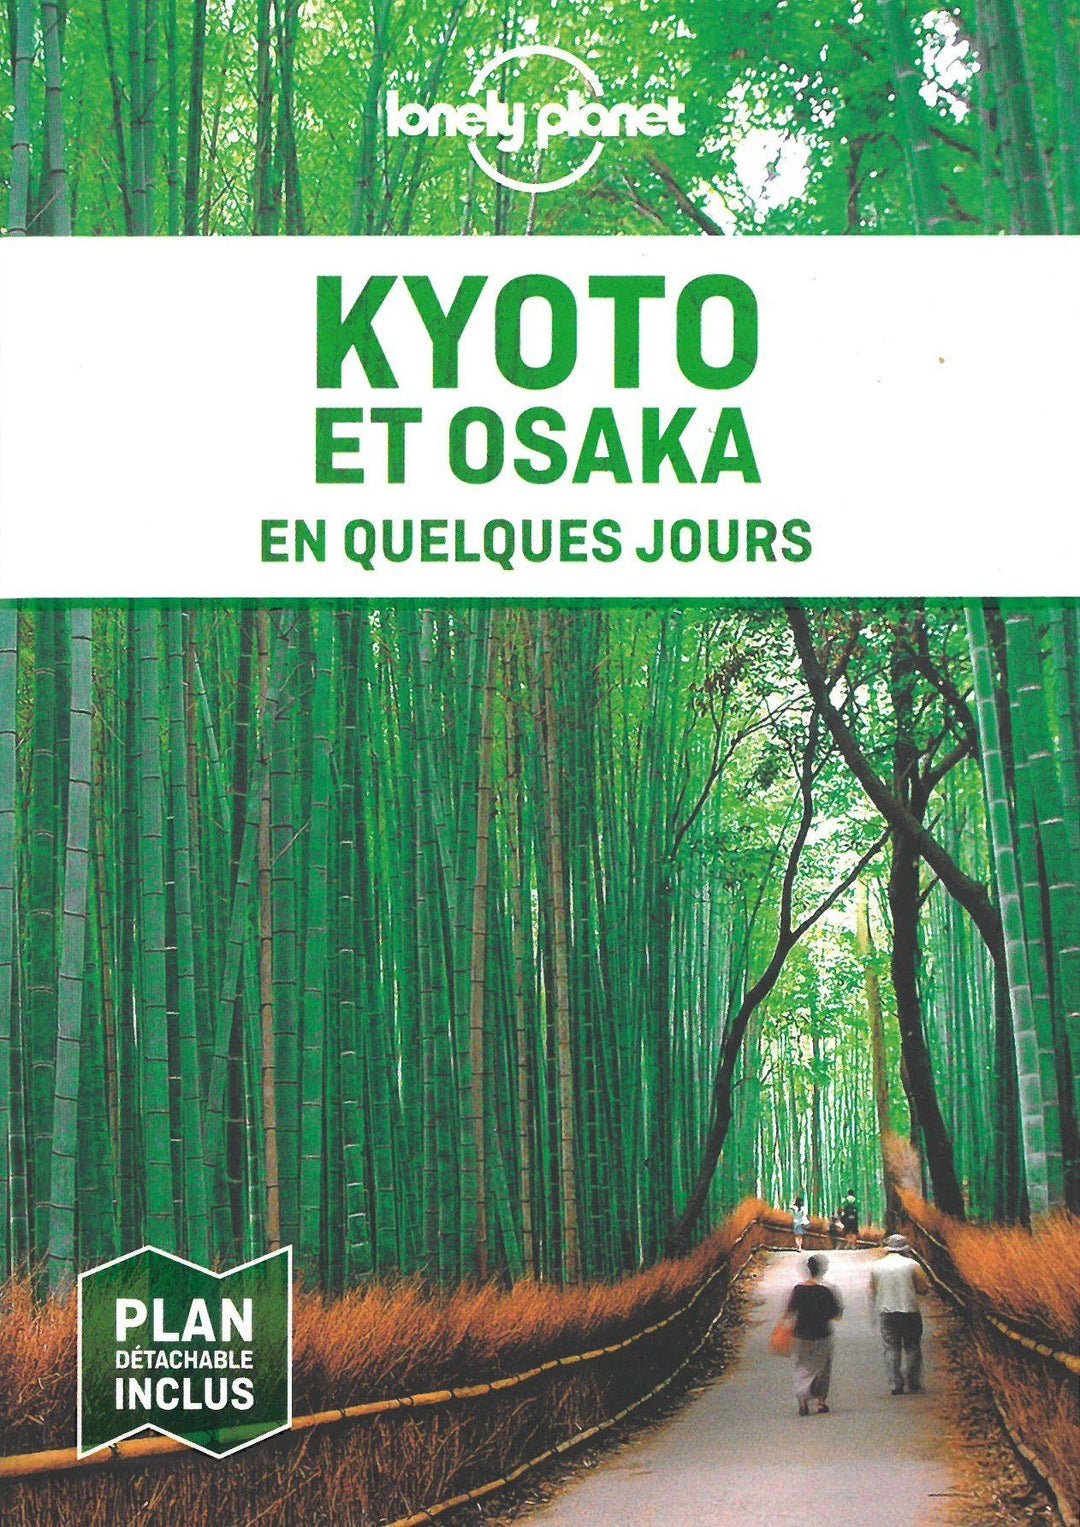 Guide de voyage de poche - Kyoto & Osaka en quelques jours - Édition 2021 | Lonely Planet guide de voyage Lonely Planet 